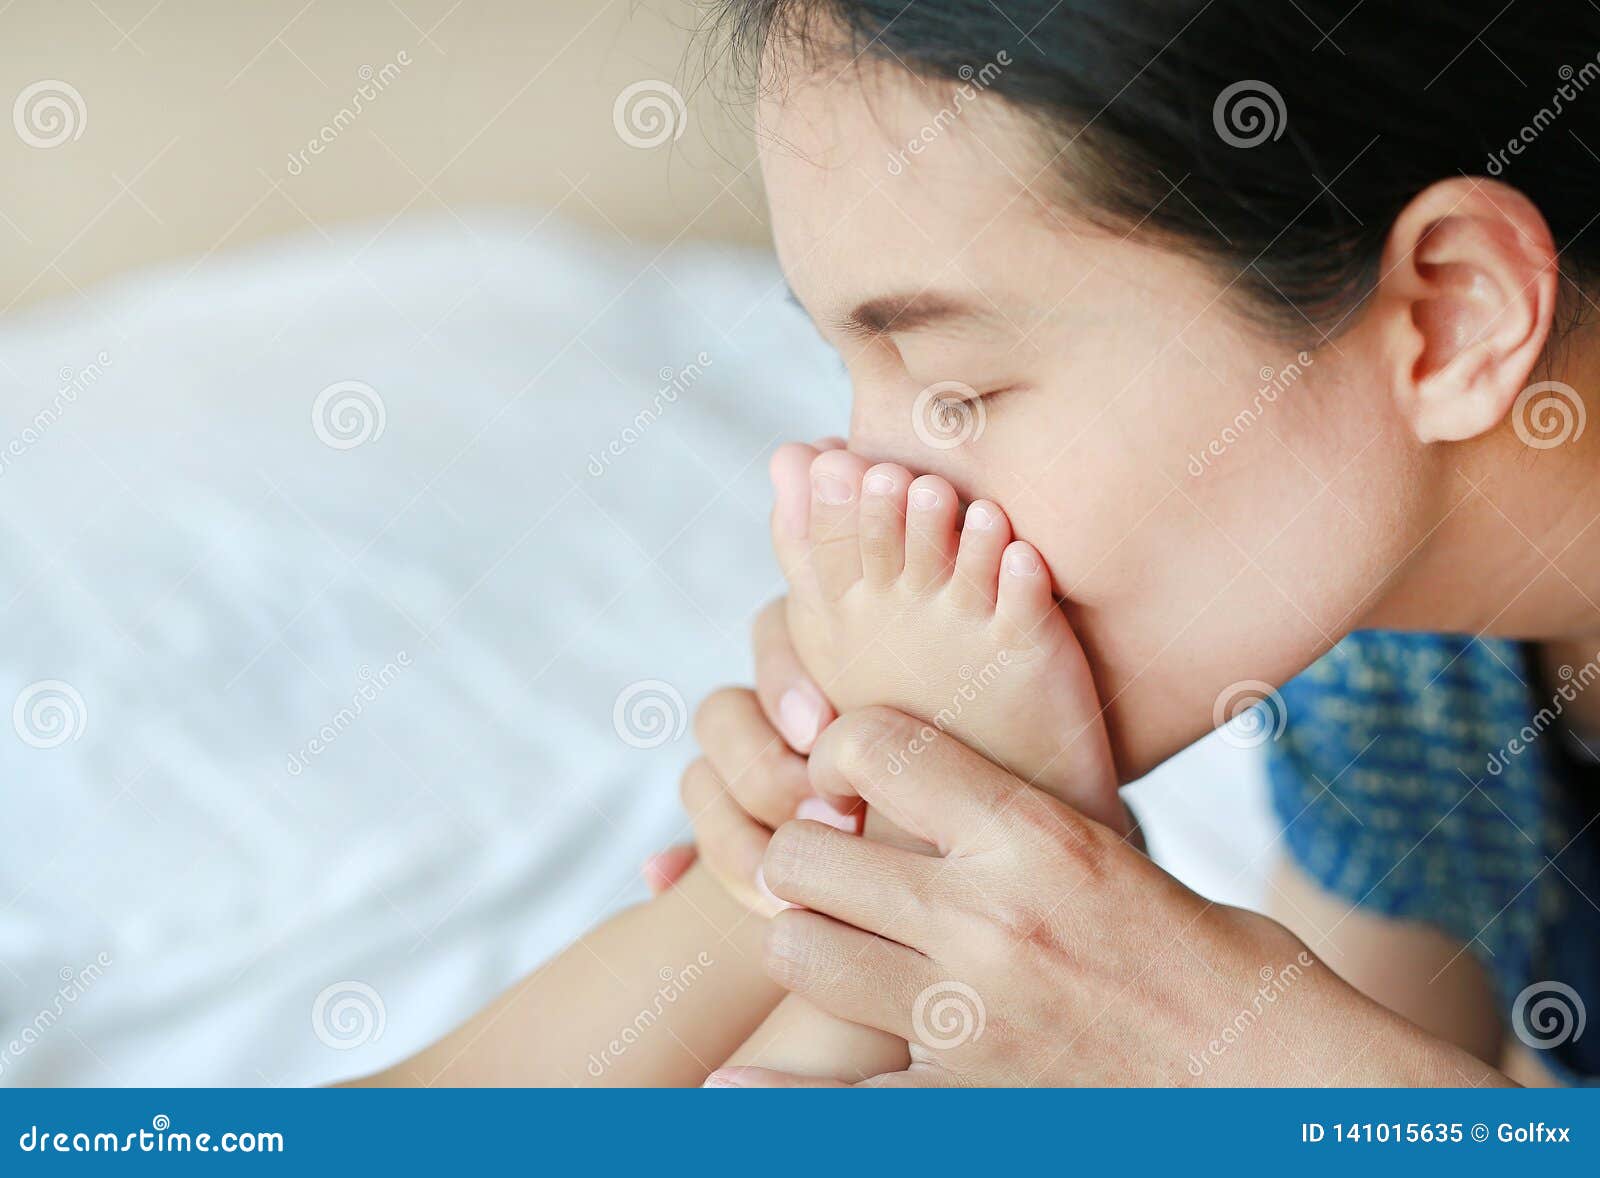 asian girl feet kissing